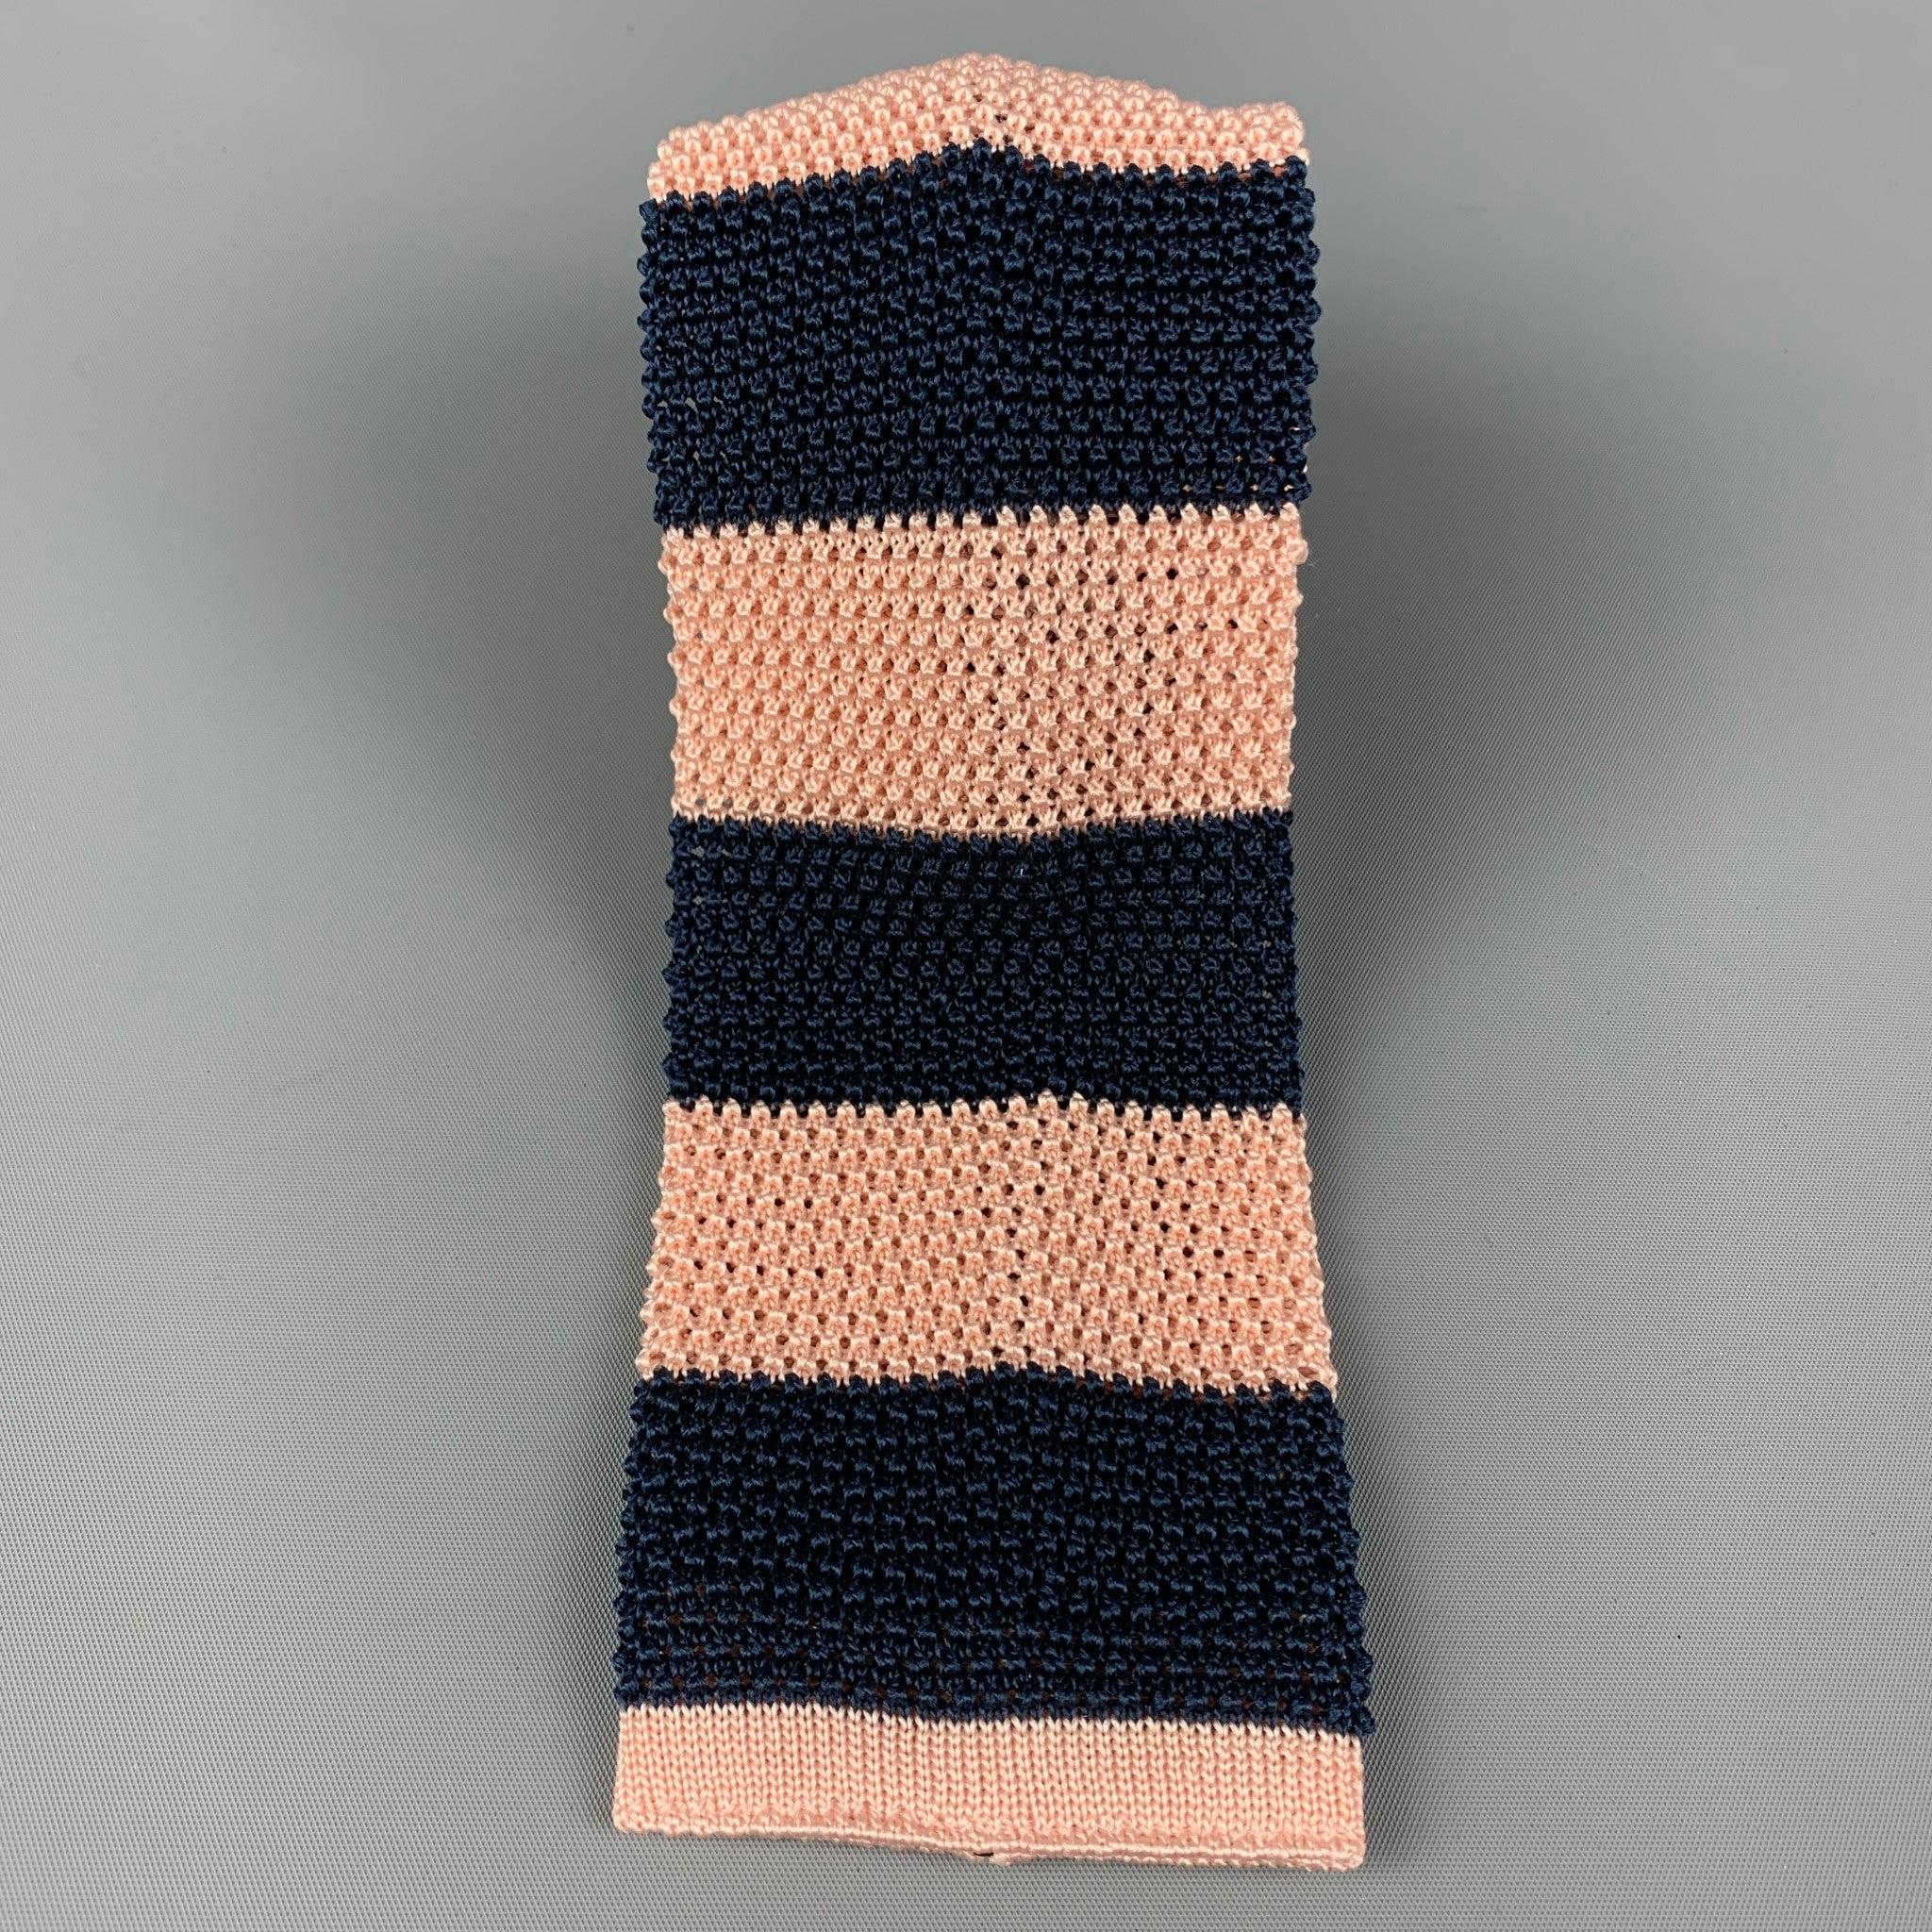 PAUL SMITH
La cravate est en sergé de soie tricoté marine et rose avec un imprimé à rayures sur tout le pourtour. Fabriquées en Italie. Très bon état d'origine. 

Mesures : 
  Largeur : 3 pouces Longueur : 62 pouces 
  
  
 
Référence :